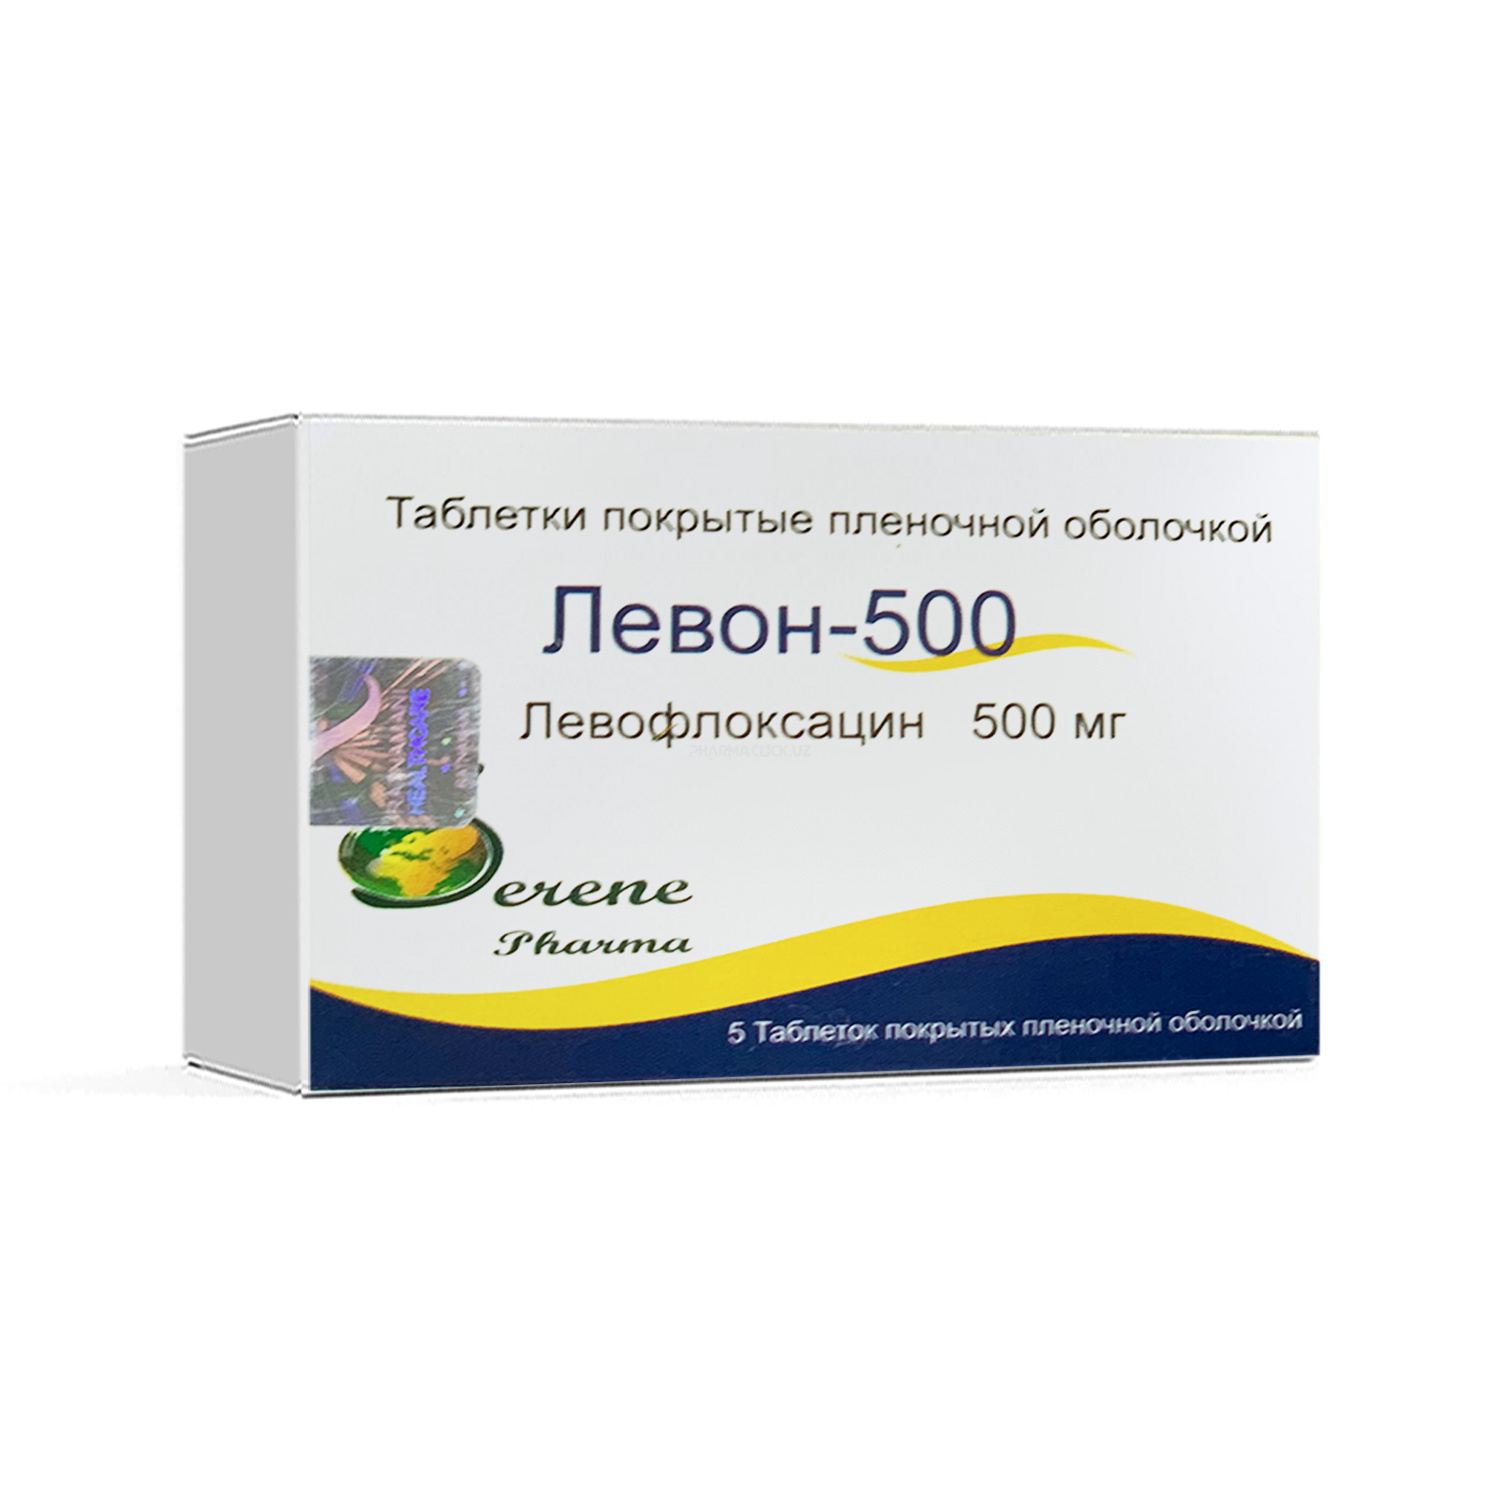 Levon-500 tab. 500 mg №5